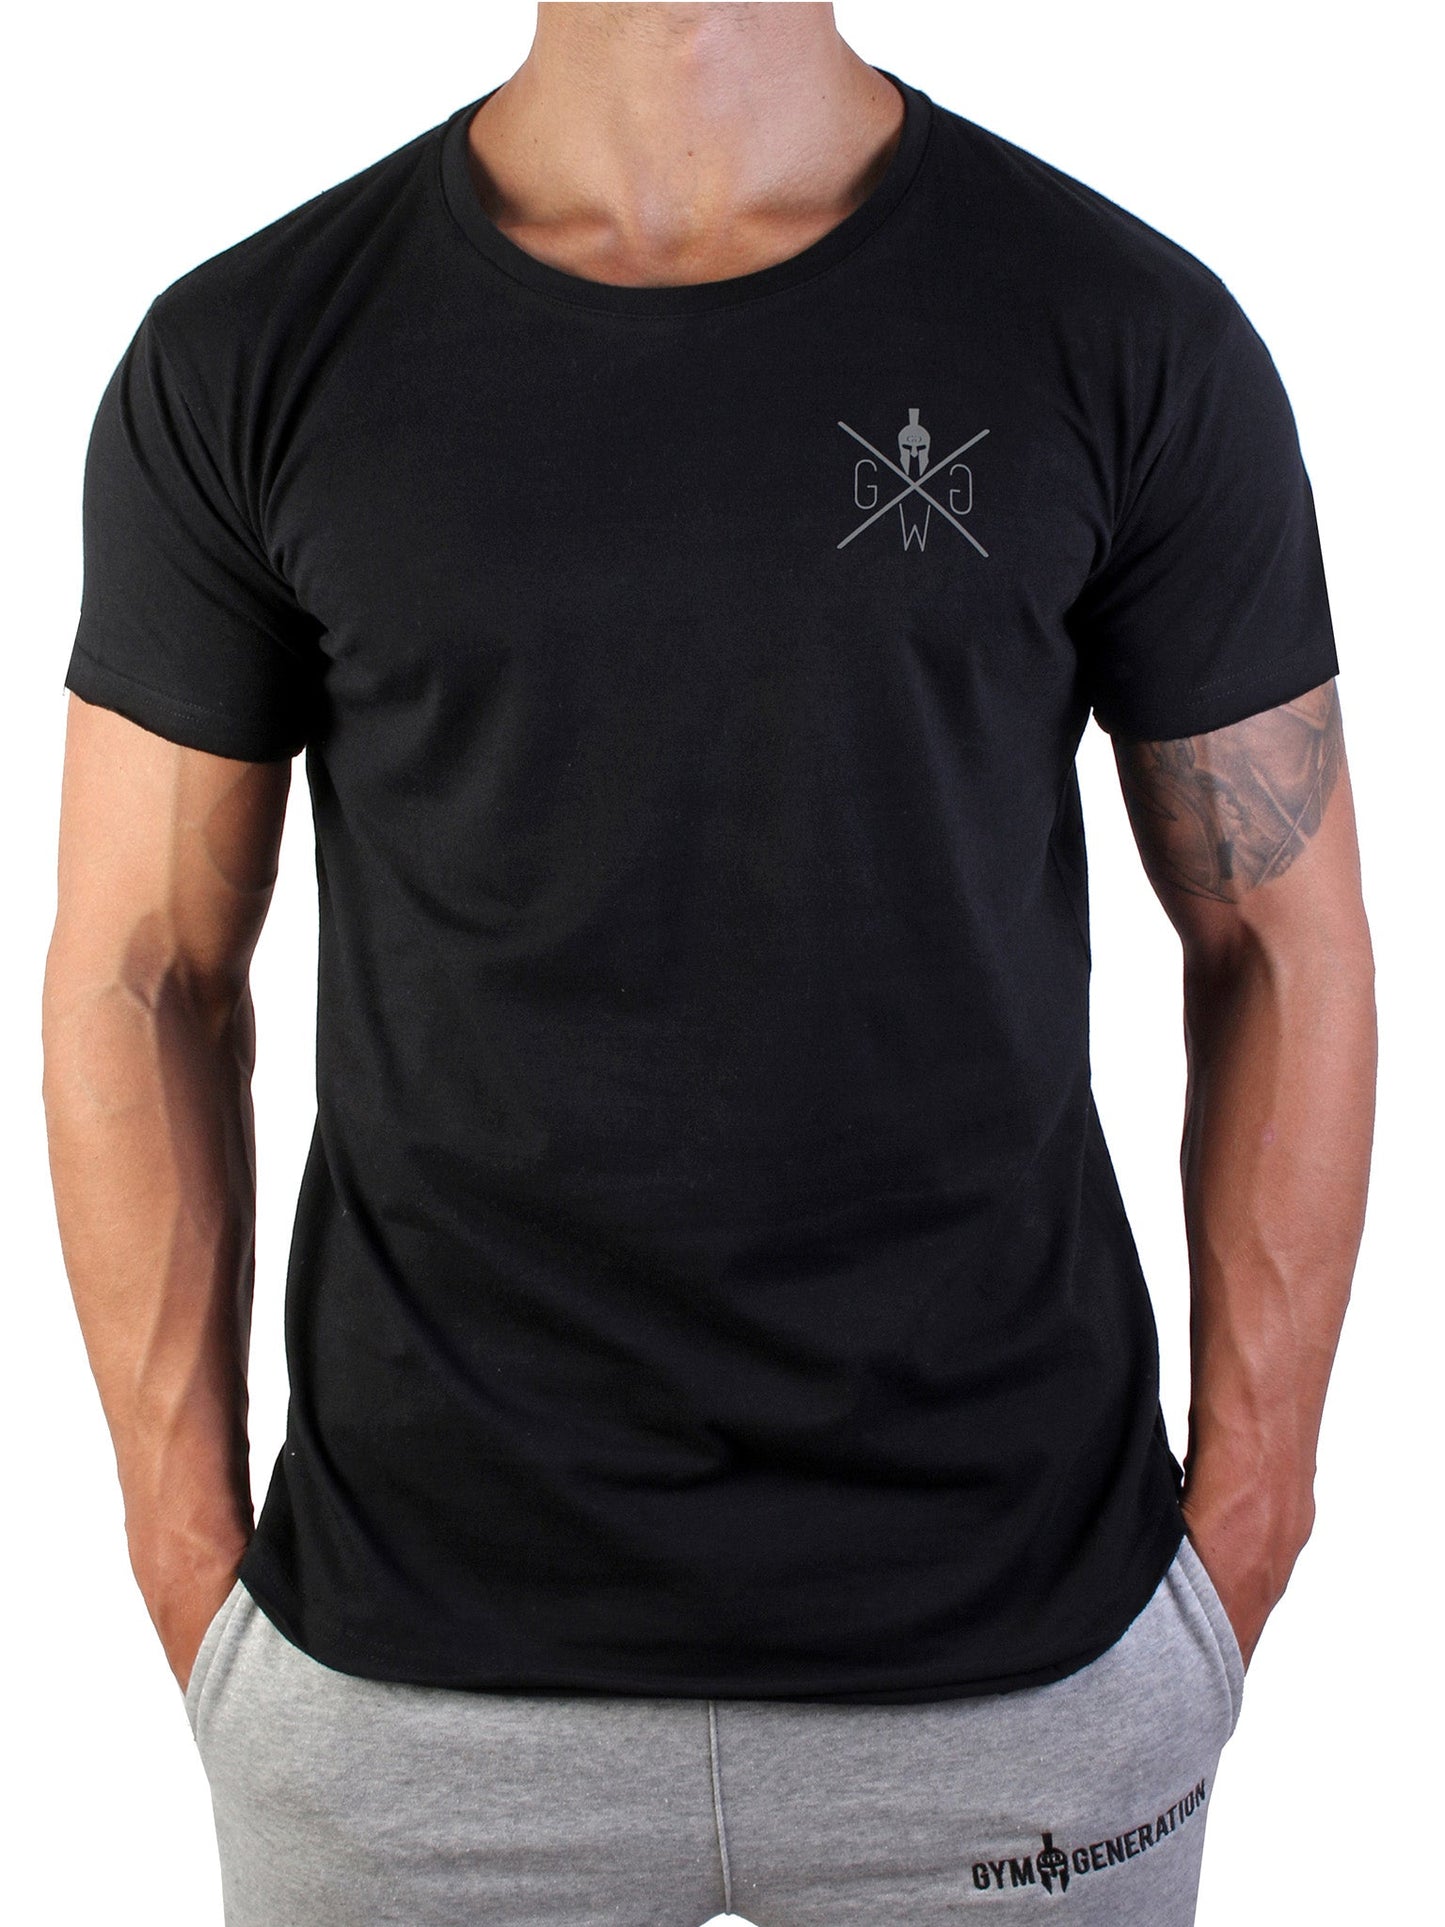 Vielseitiges schwarzes Gym T-Shirt für Herren, ideal für Workouts und lässige Alltagslooks.